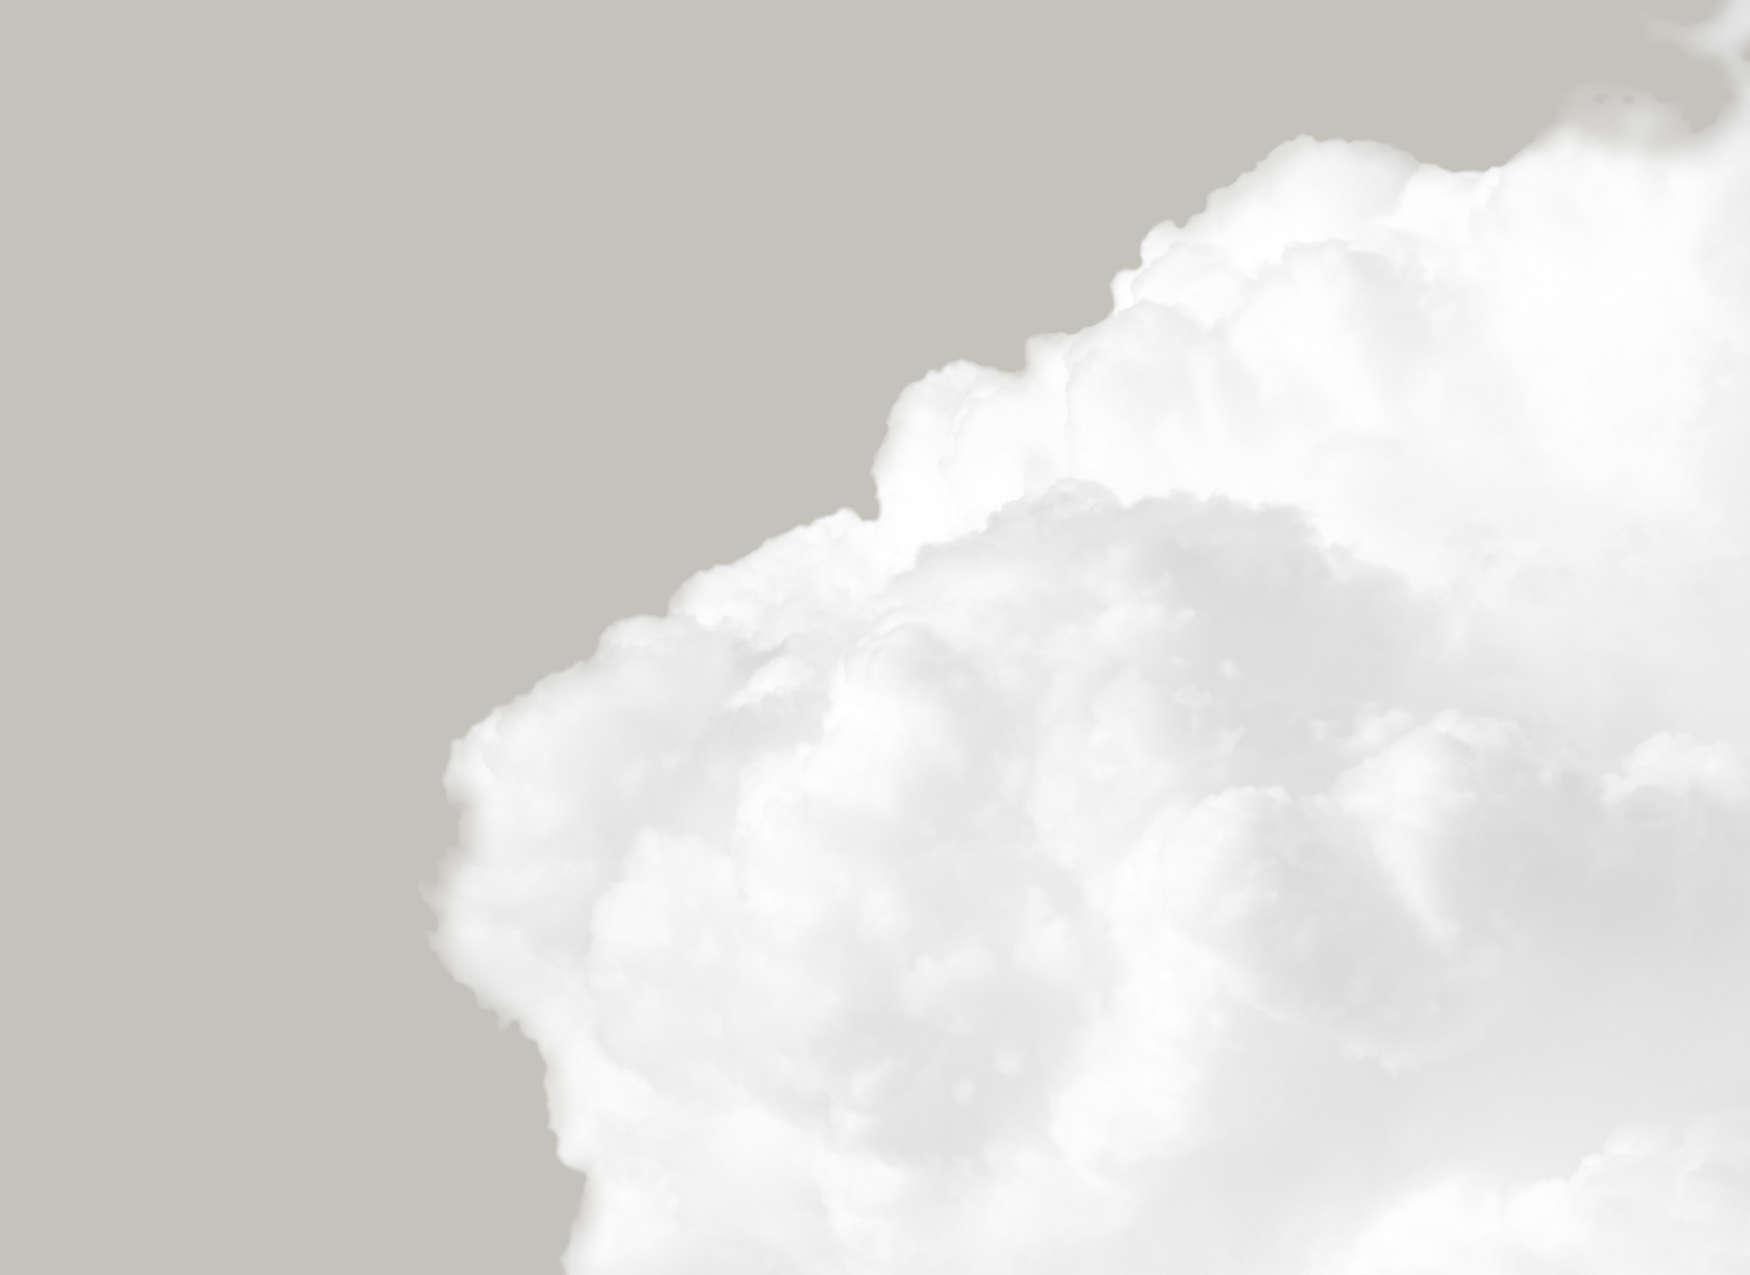             Fototapete mit weißen Wolken am grauen Himmel – Grau, Weiß
        